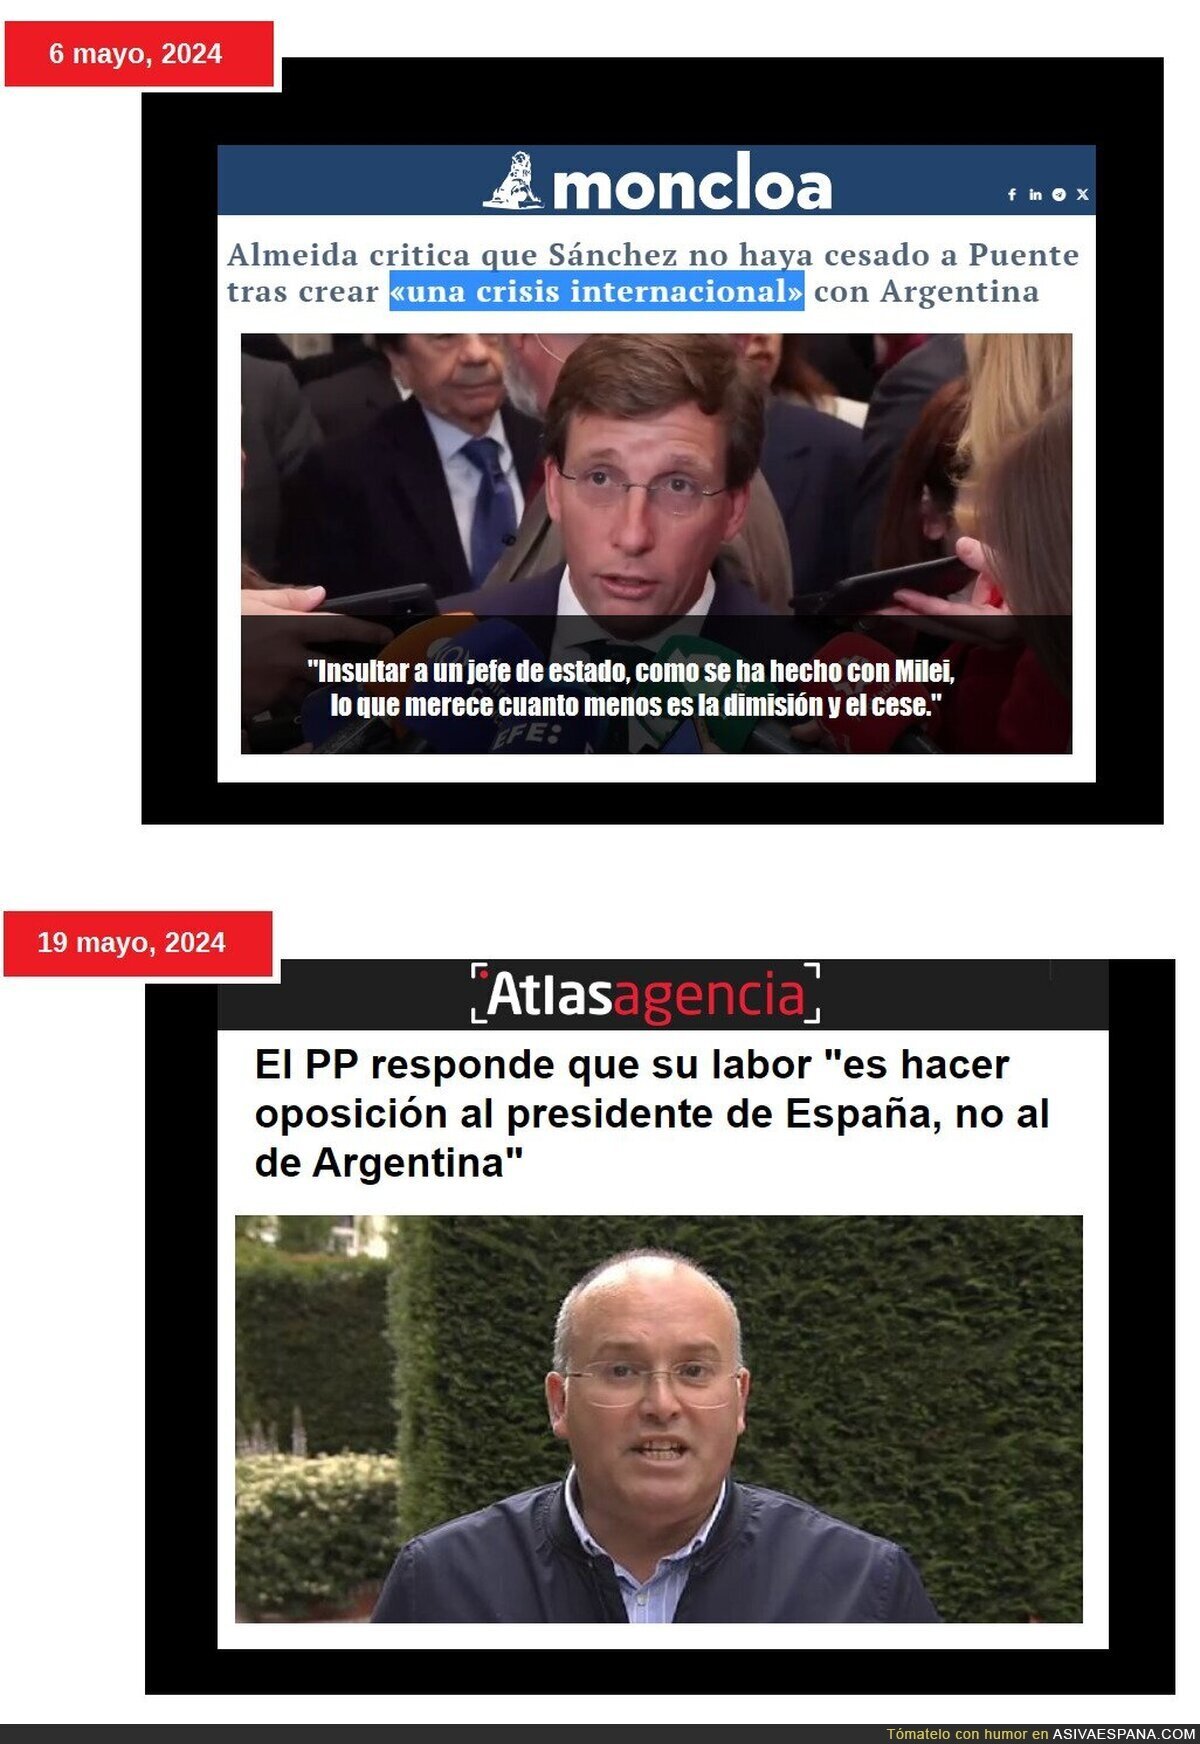 Los patriotas cuando insultan al Presidente de Argentina // Los patriotas cuando insultan al Presidente de España